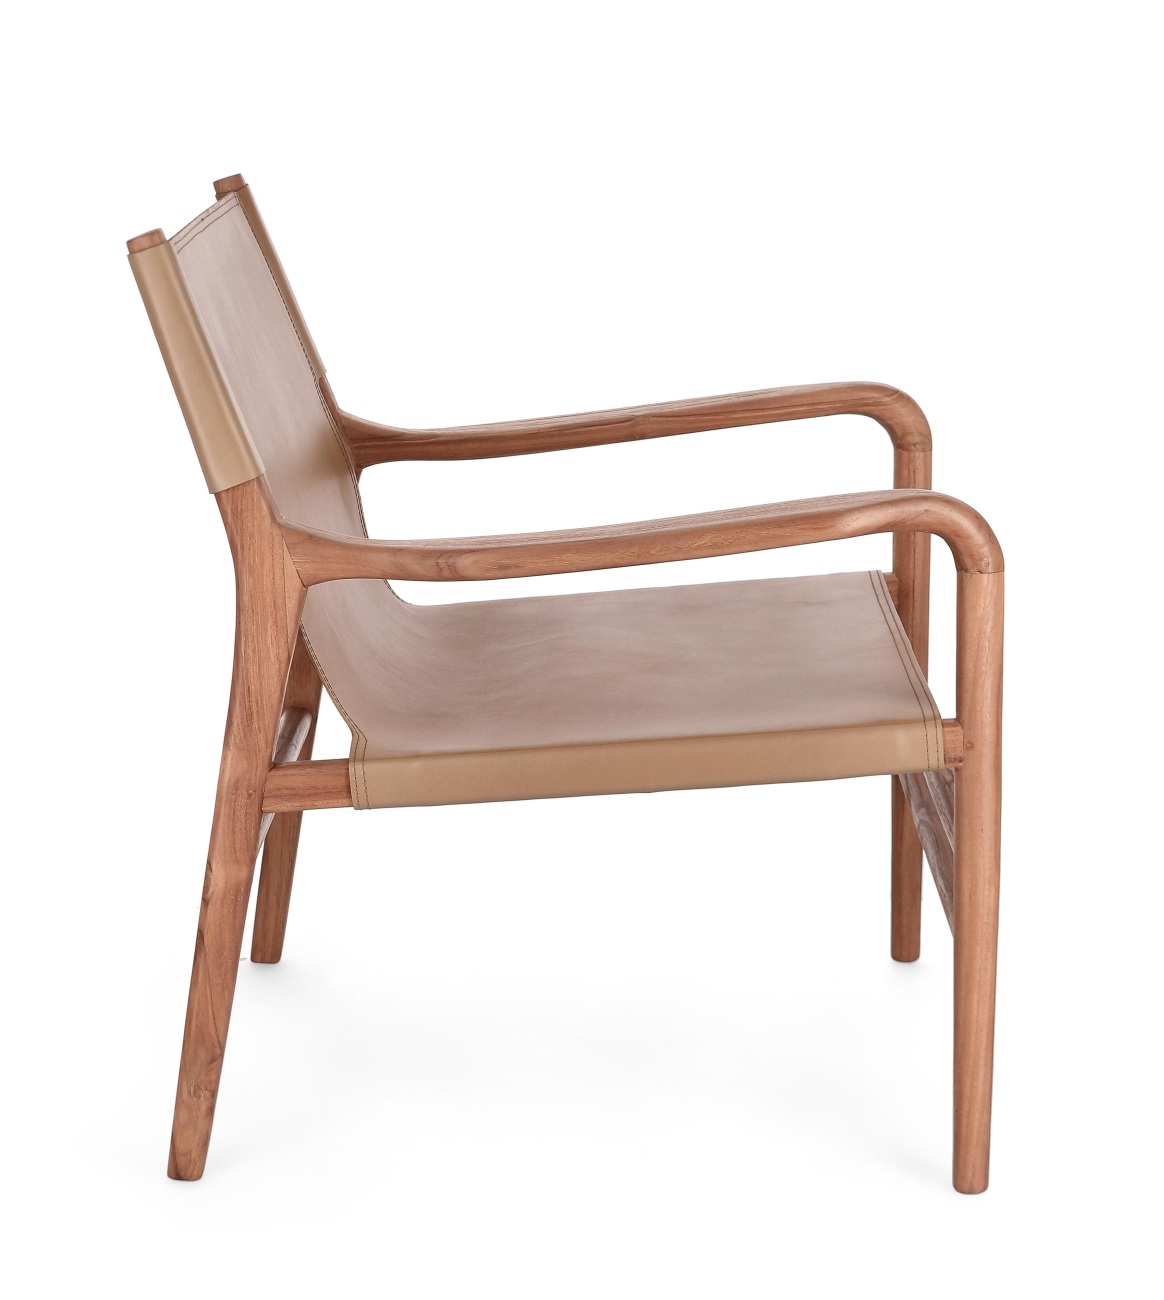 Der Sessel Caroline überzeugt mit seinem modernen Stil. Gefertigt wurde er aus Leder, welches einen Taupe Farbton besitzt. Das Gestell ist aus Teakholz und hat eine natürliche Farbe. Der Sessel besitzt eine Sitzhöhe von 57 cm.